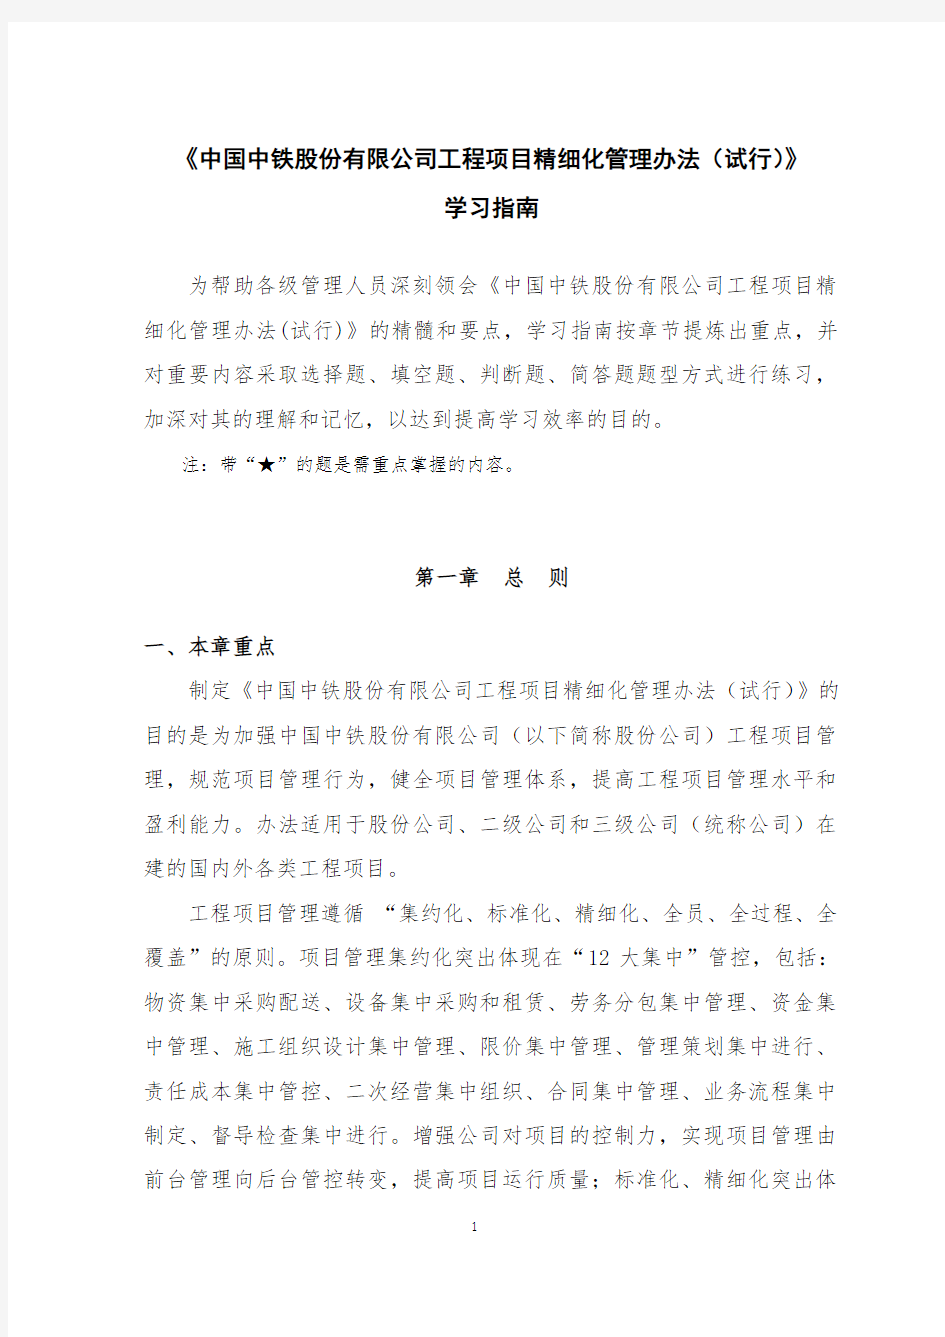 《中国中铁股份有限公司工程项目精细化管理办法(试行)》学习指南(发布稿)